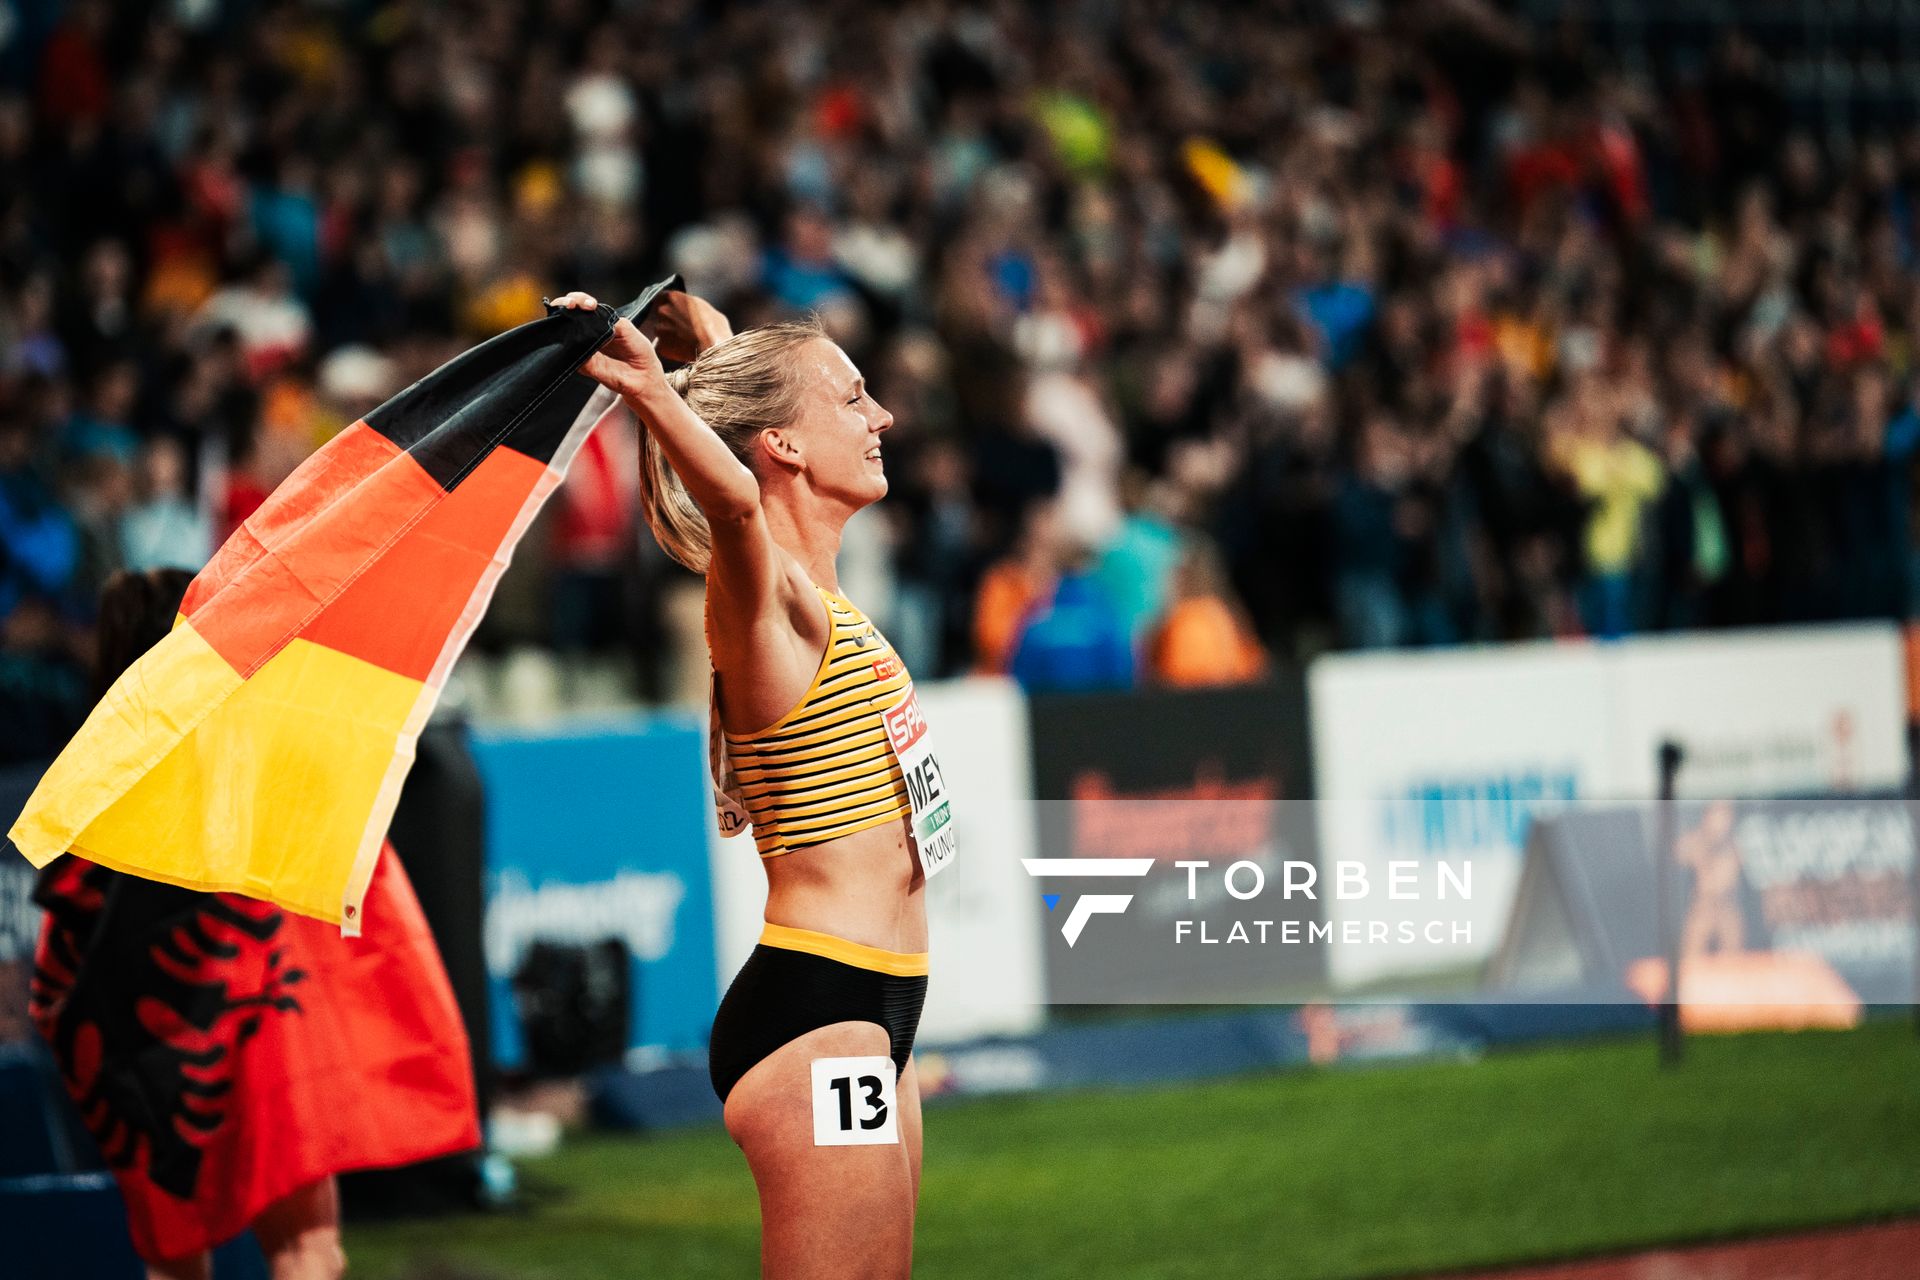 Lea Meyer (GER) am 20.08.2022 bei den Leichtathletik-Europameisterschaften in Muenchen